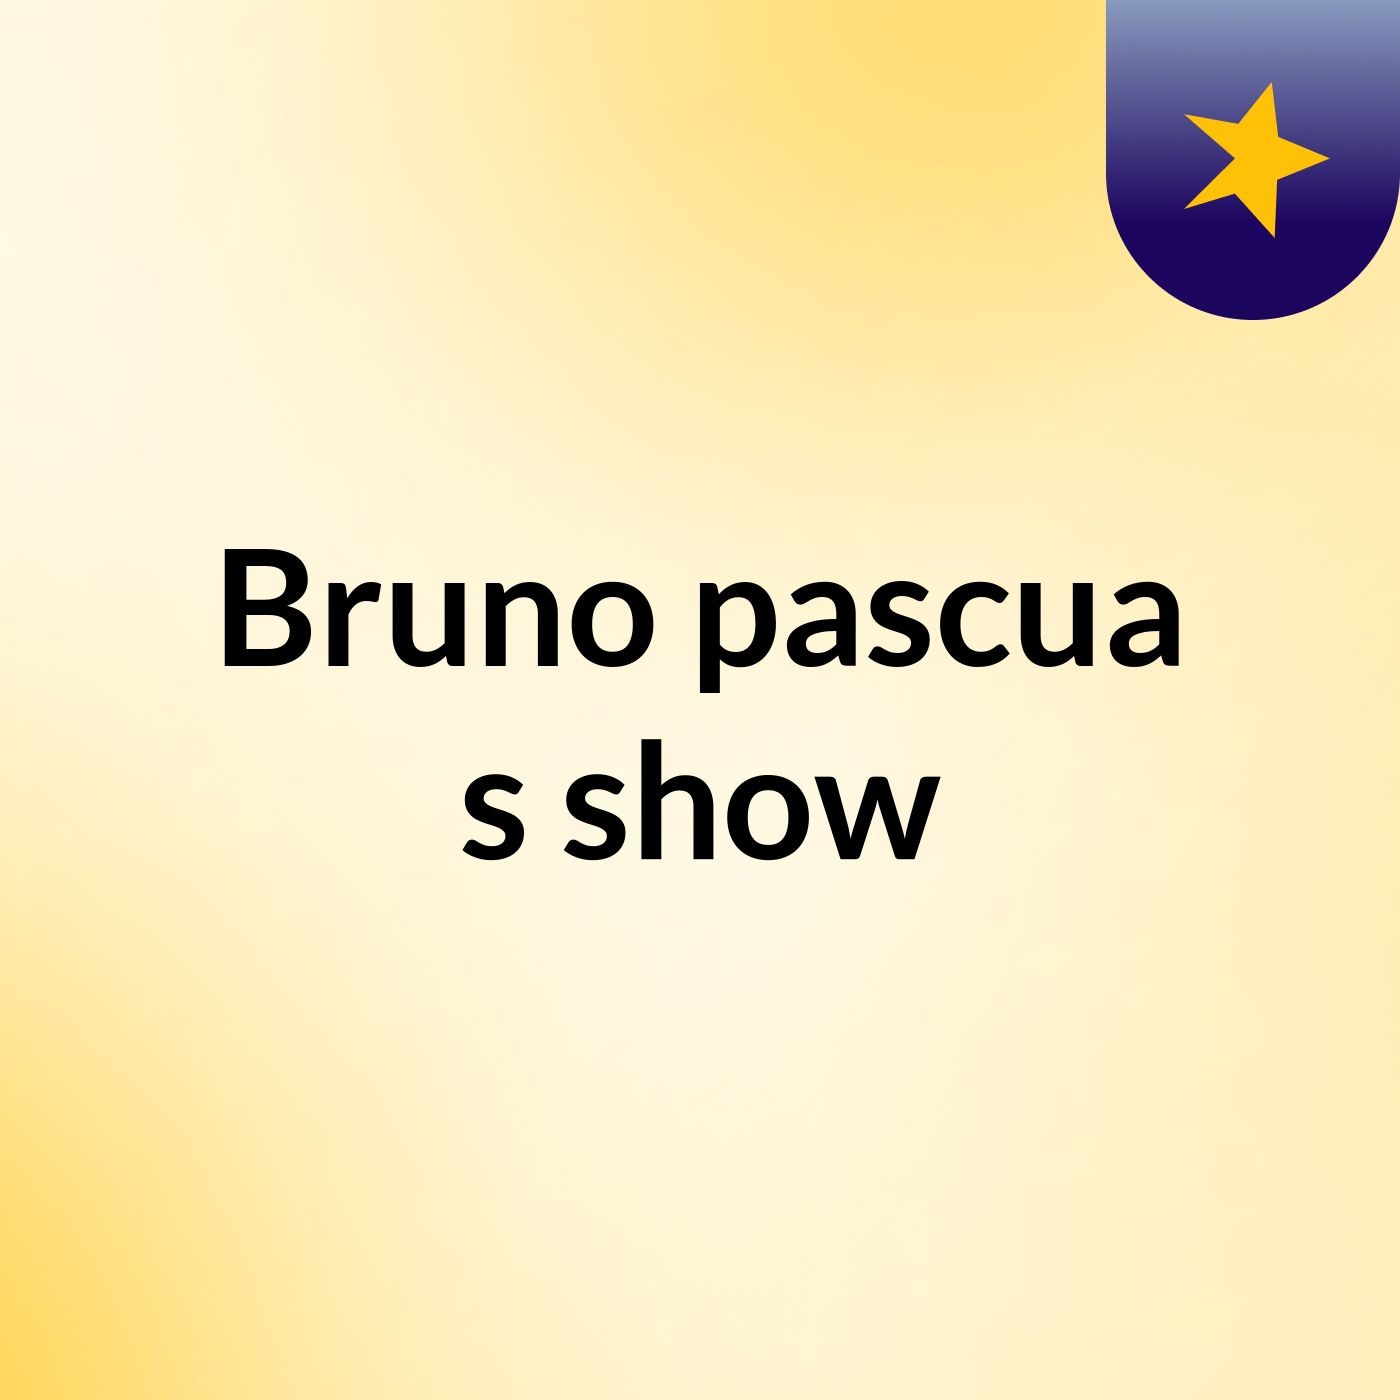 Bruno pascua's show